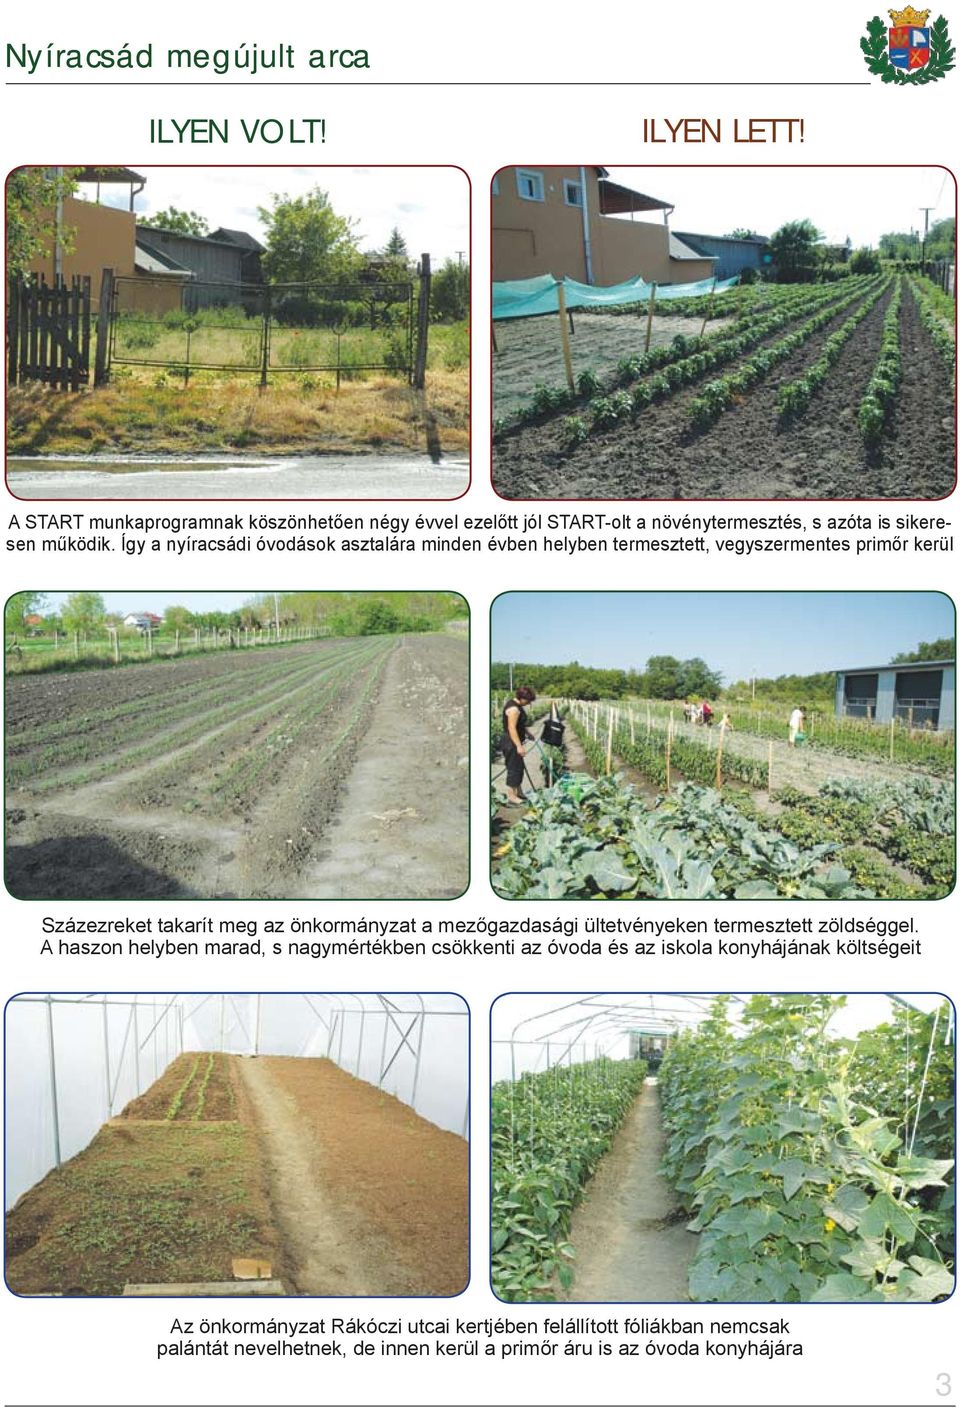 a mezőgazdasági ültetvényeken termesztett zöldséggel.